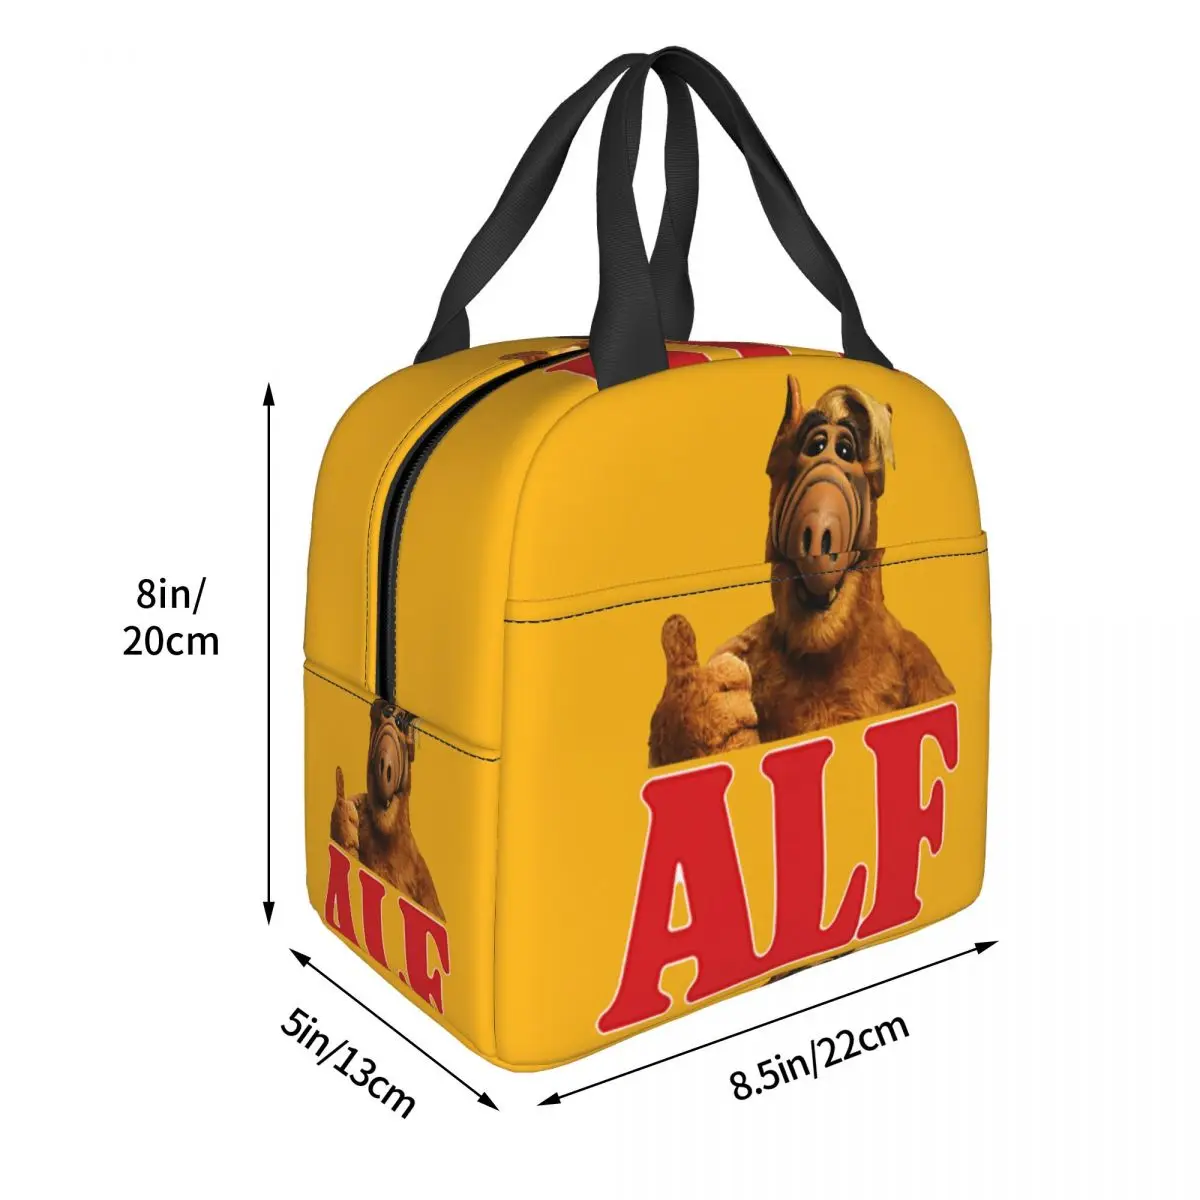 Alf Thumbs Up Lunch Bag Cooler Термоизолированный Ланч-Бокс Инопланетной Формы Жизни для Женщин, Детей, Школьной Работы, Пикника, Еды, Сумки-Тоут Изображение 2